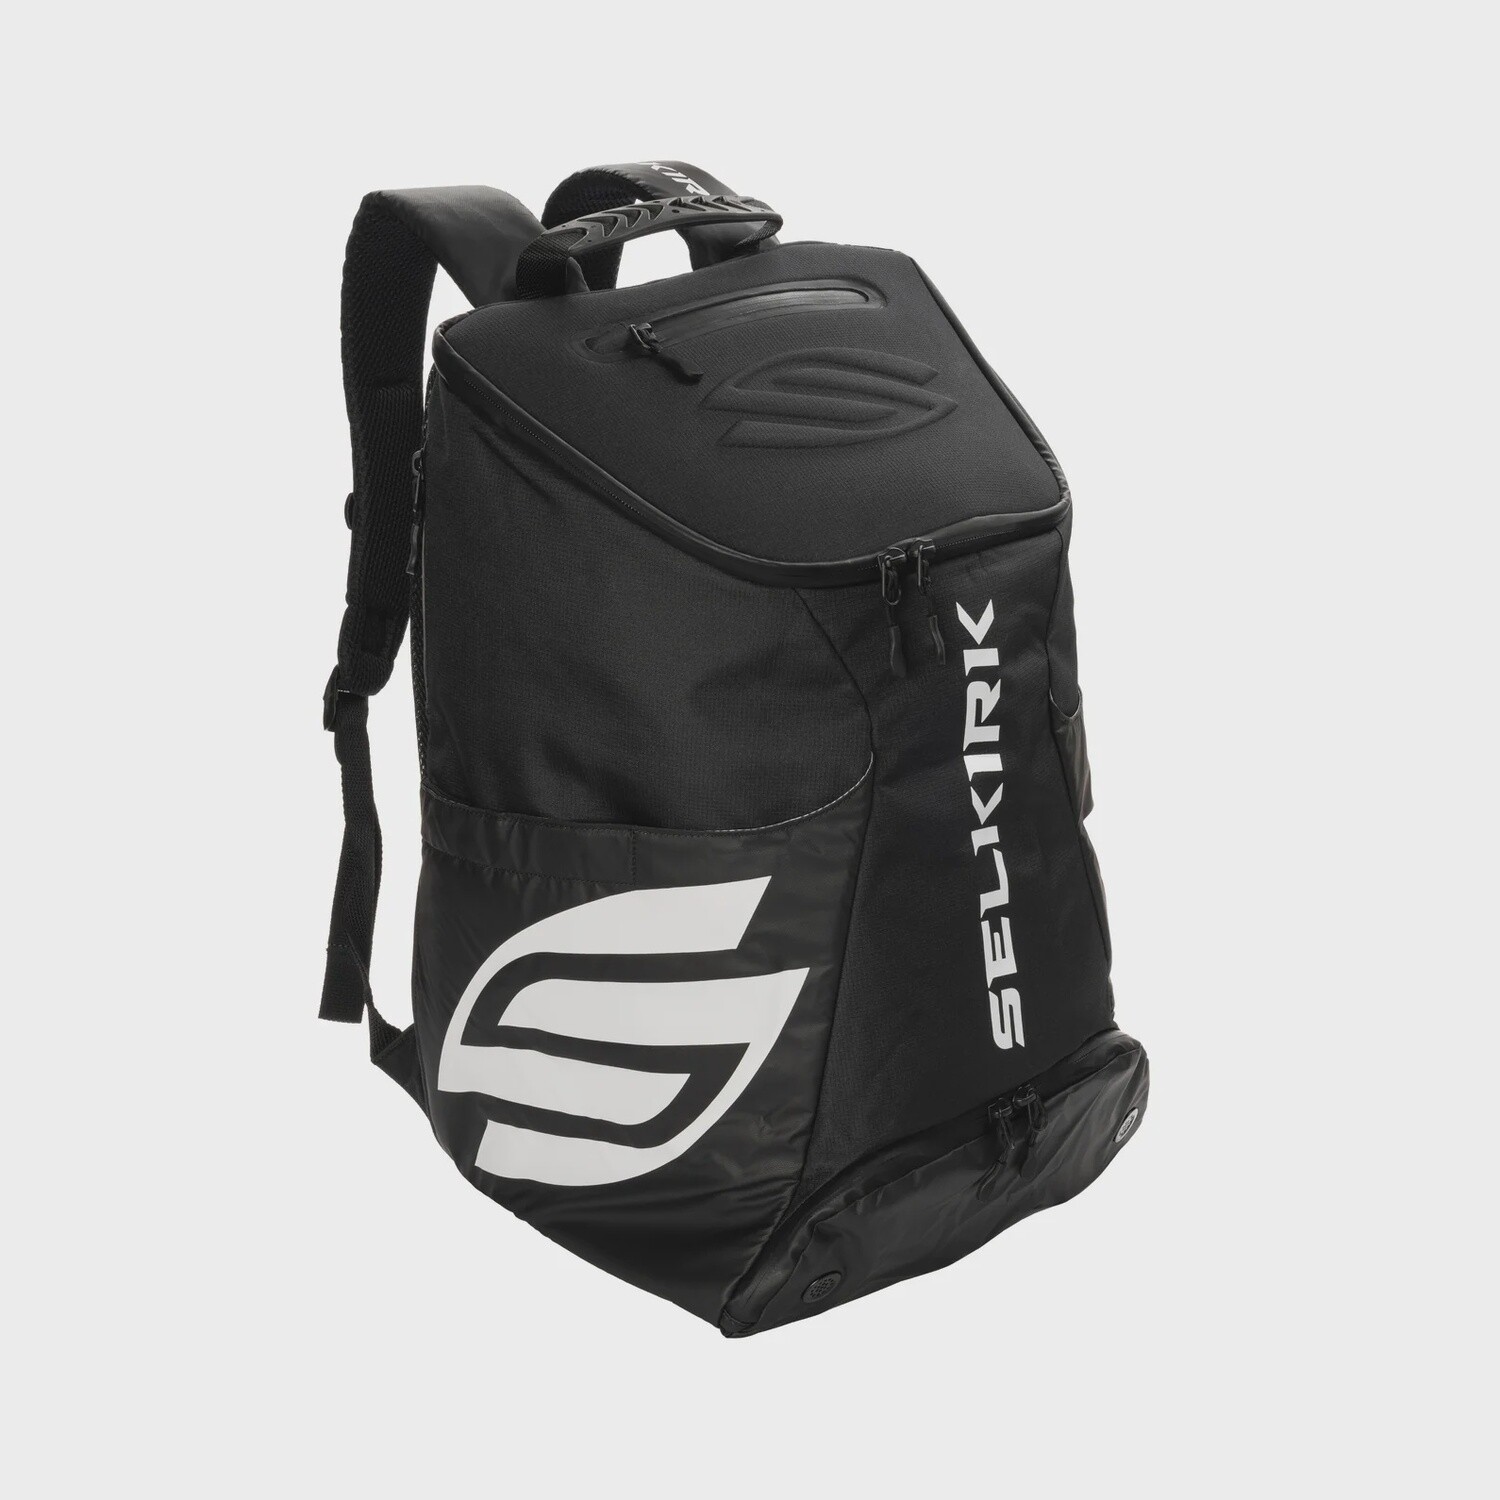 Selkirk Pro Line Team Bag, Color: Black